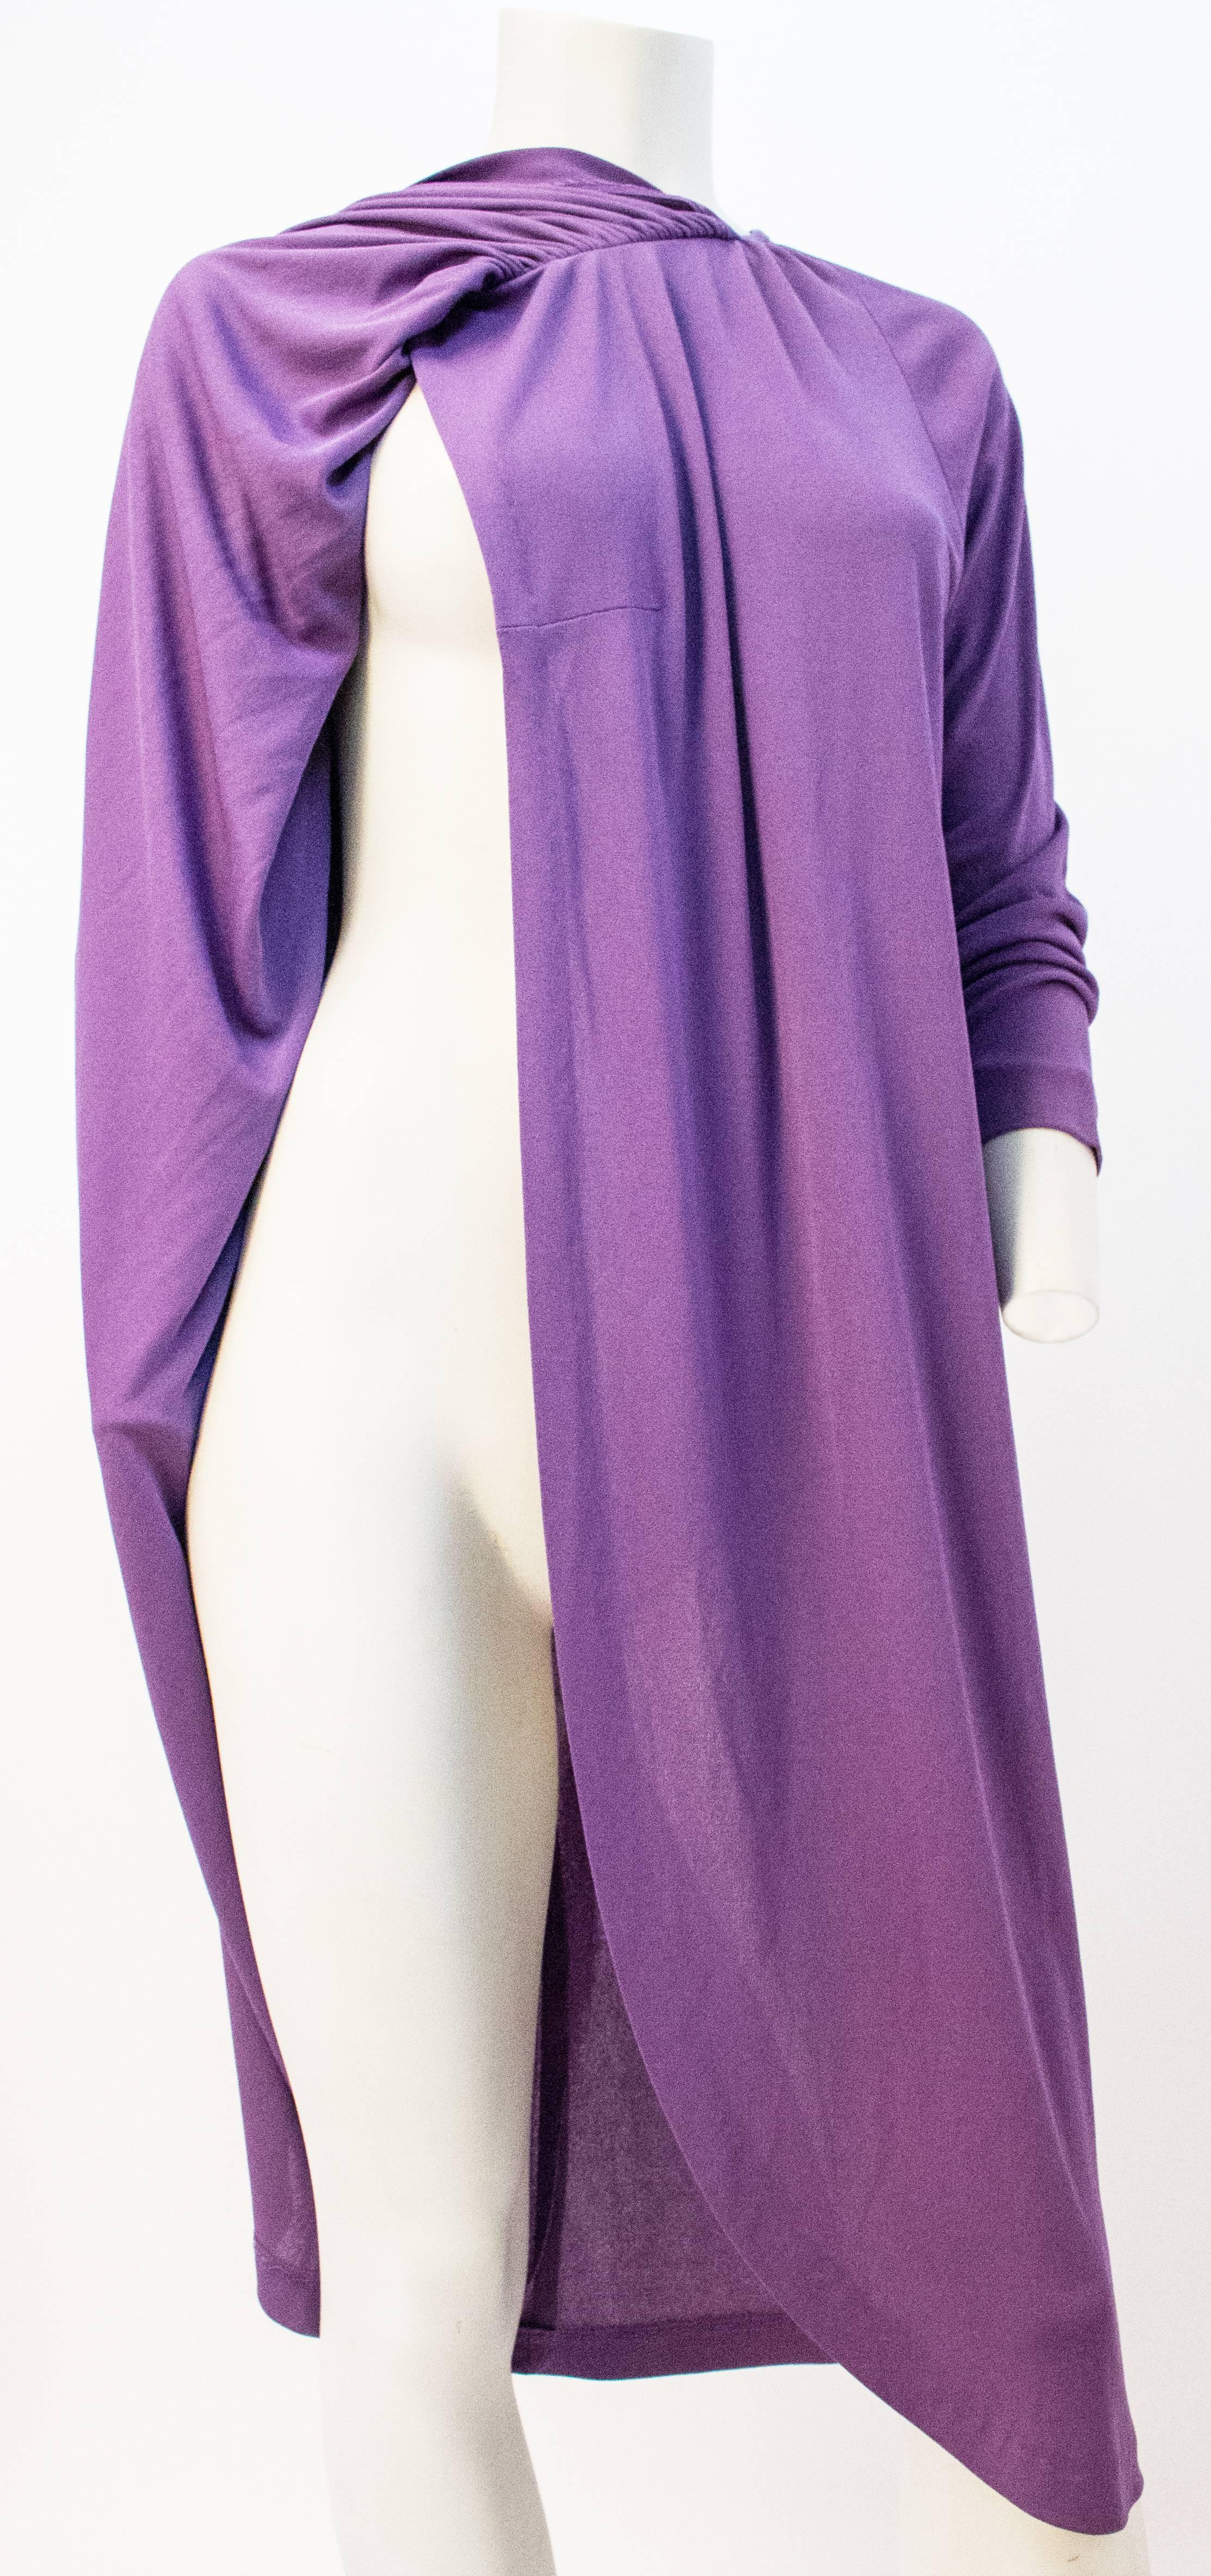 70s purple dress